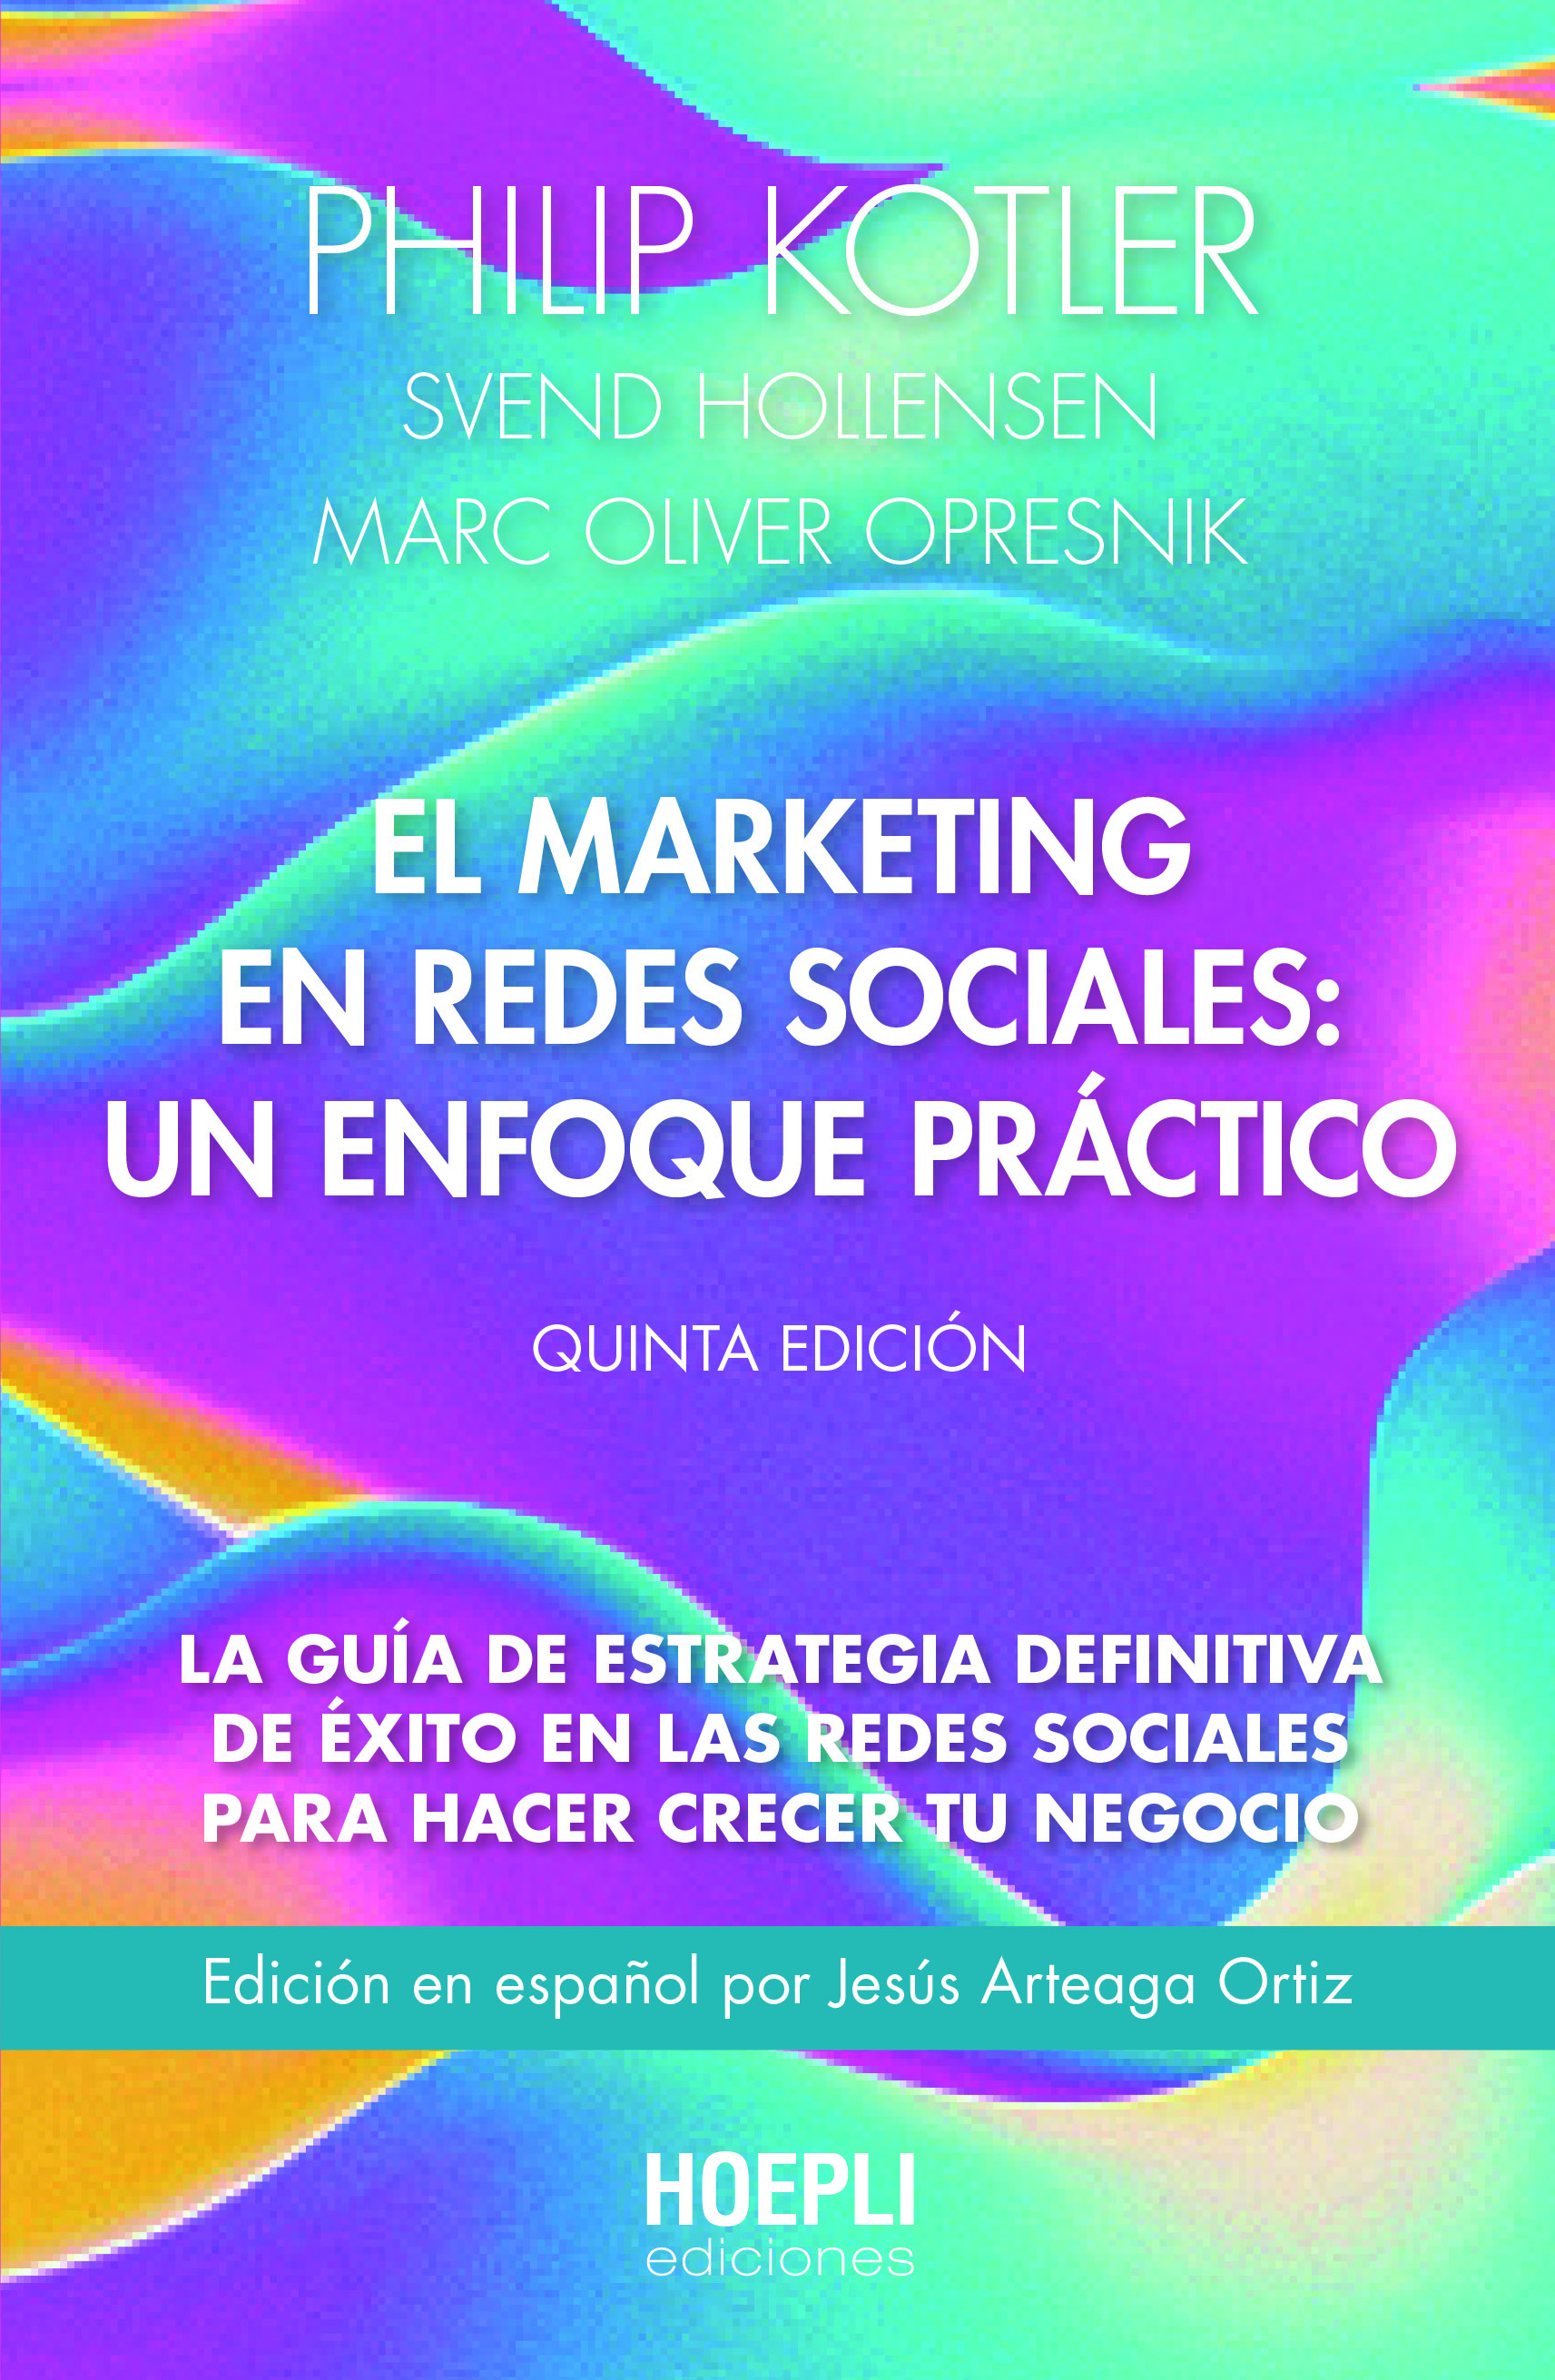 El marketing en redes sociales: un enfoque práctico. 9791254990018